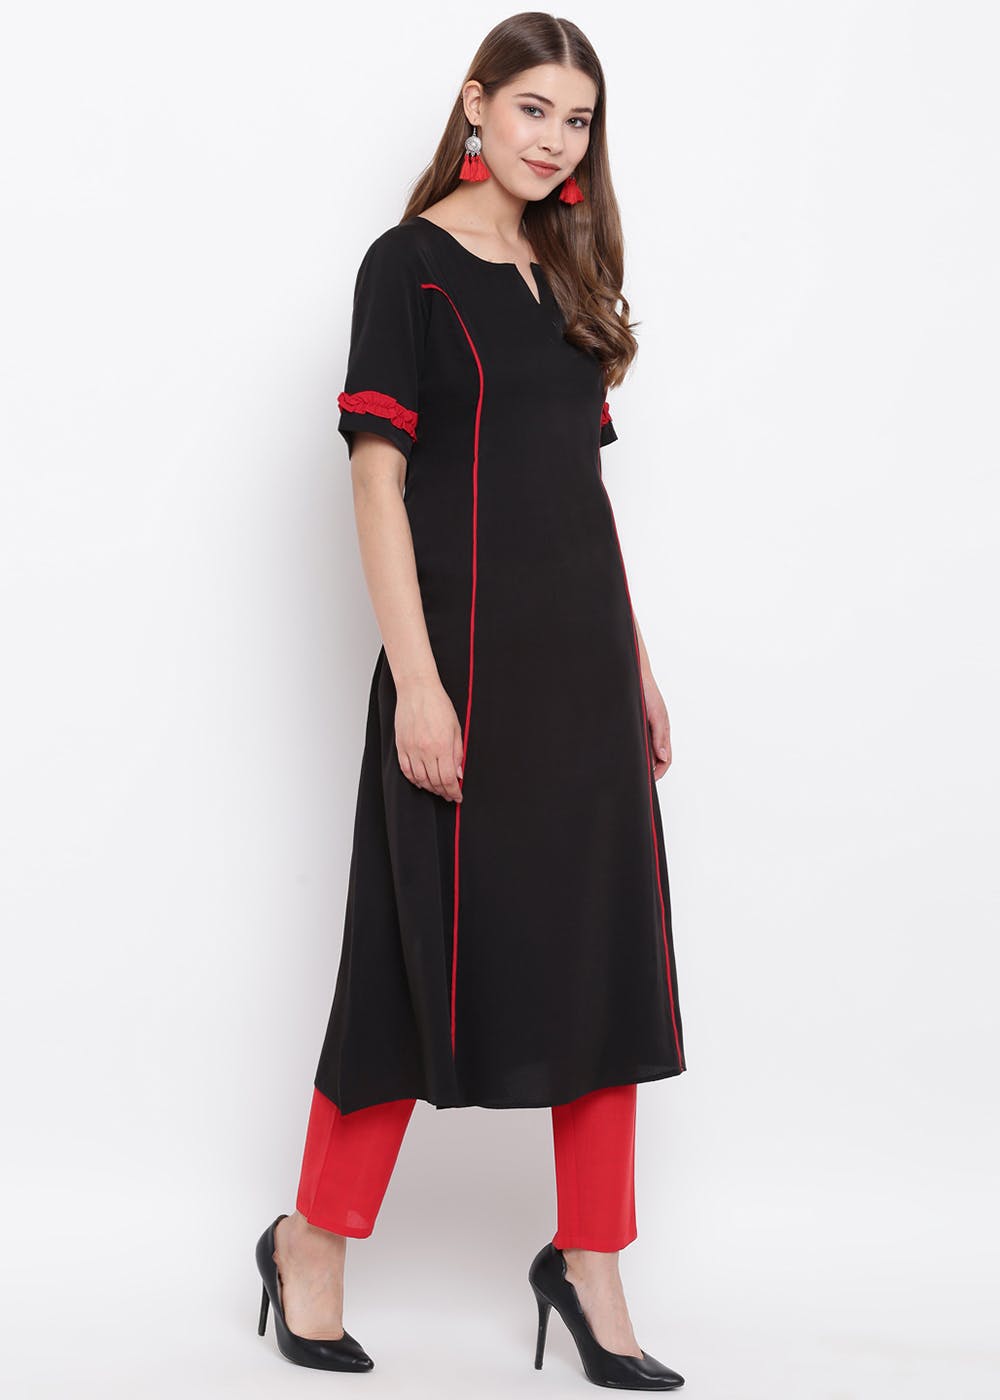 Tulsi Boutique - New Petan steech dress | Facebook